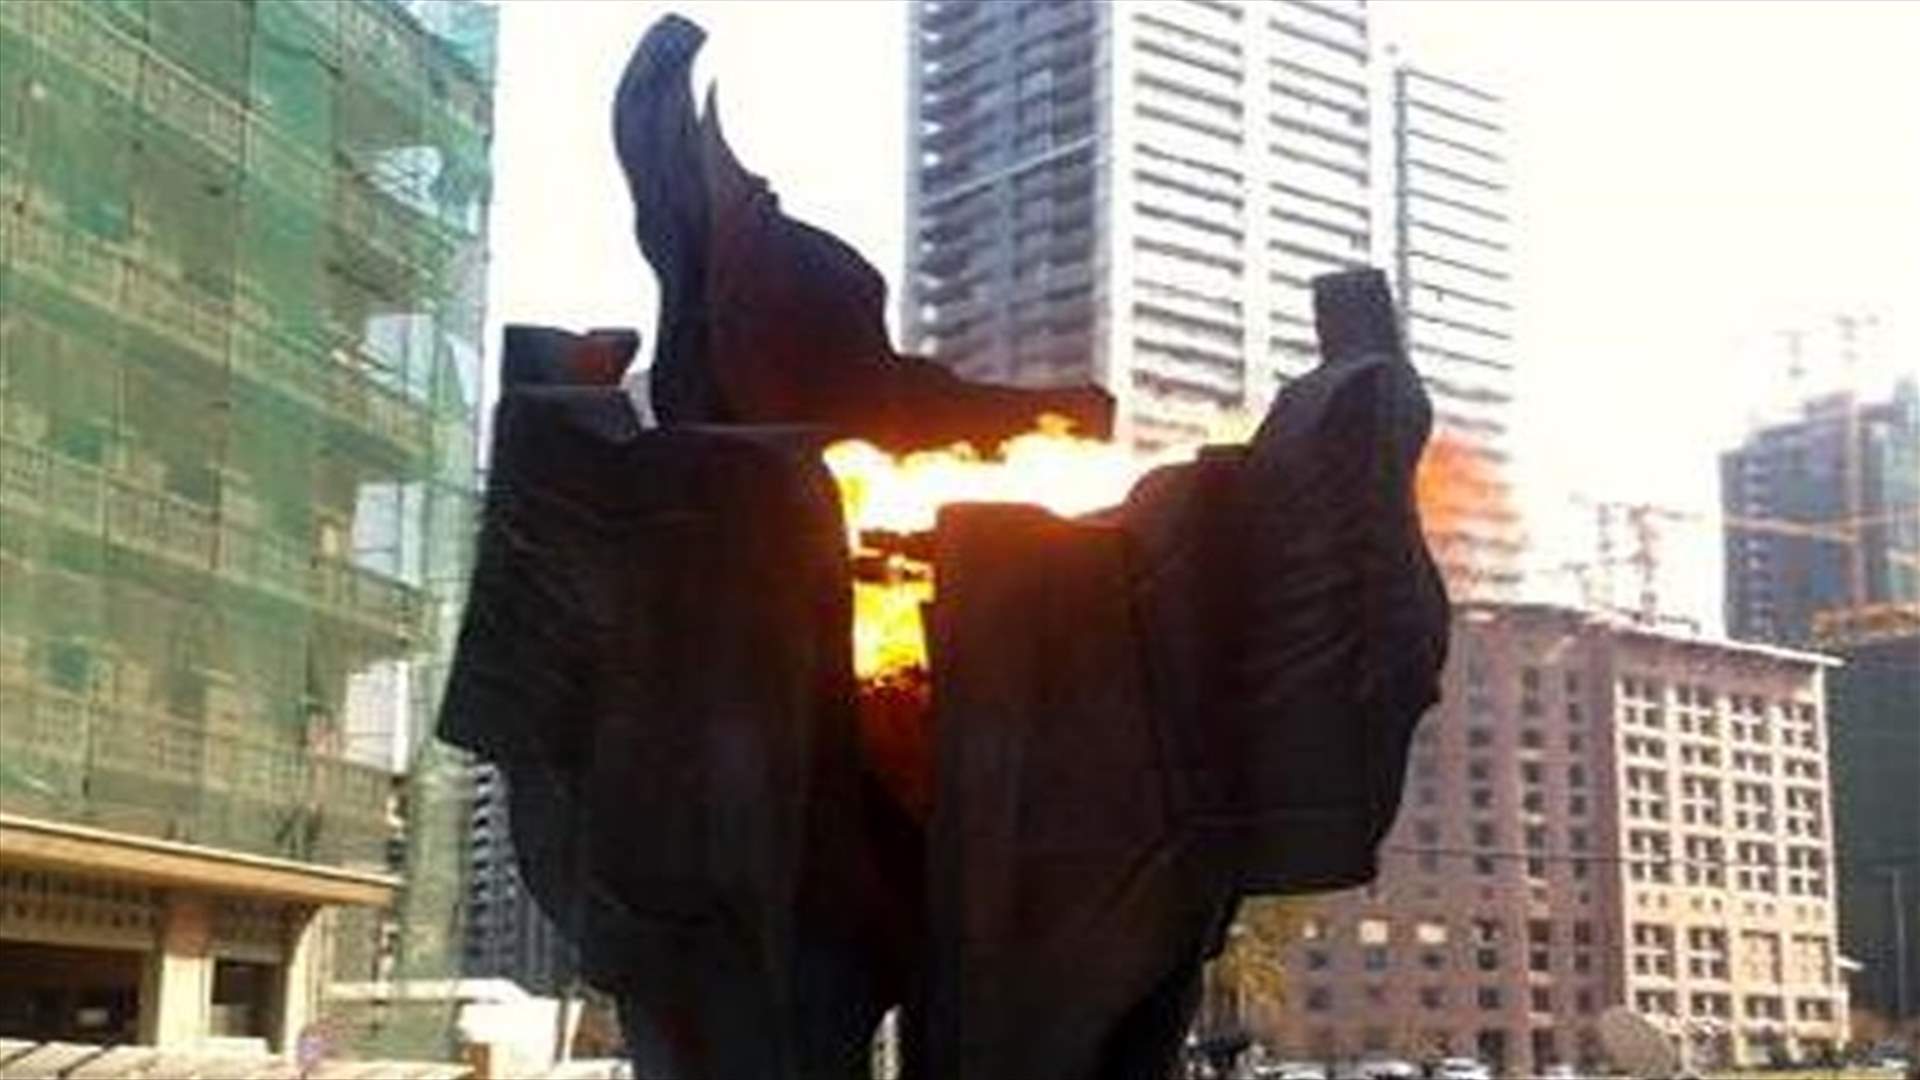 اضاءة شعلة الحرية في الموقع الذي استشهد فيه الرئيس الحريري